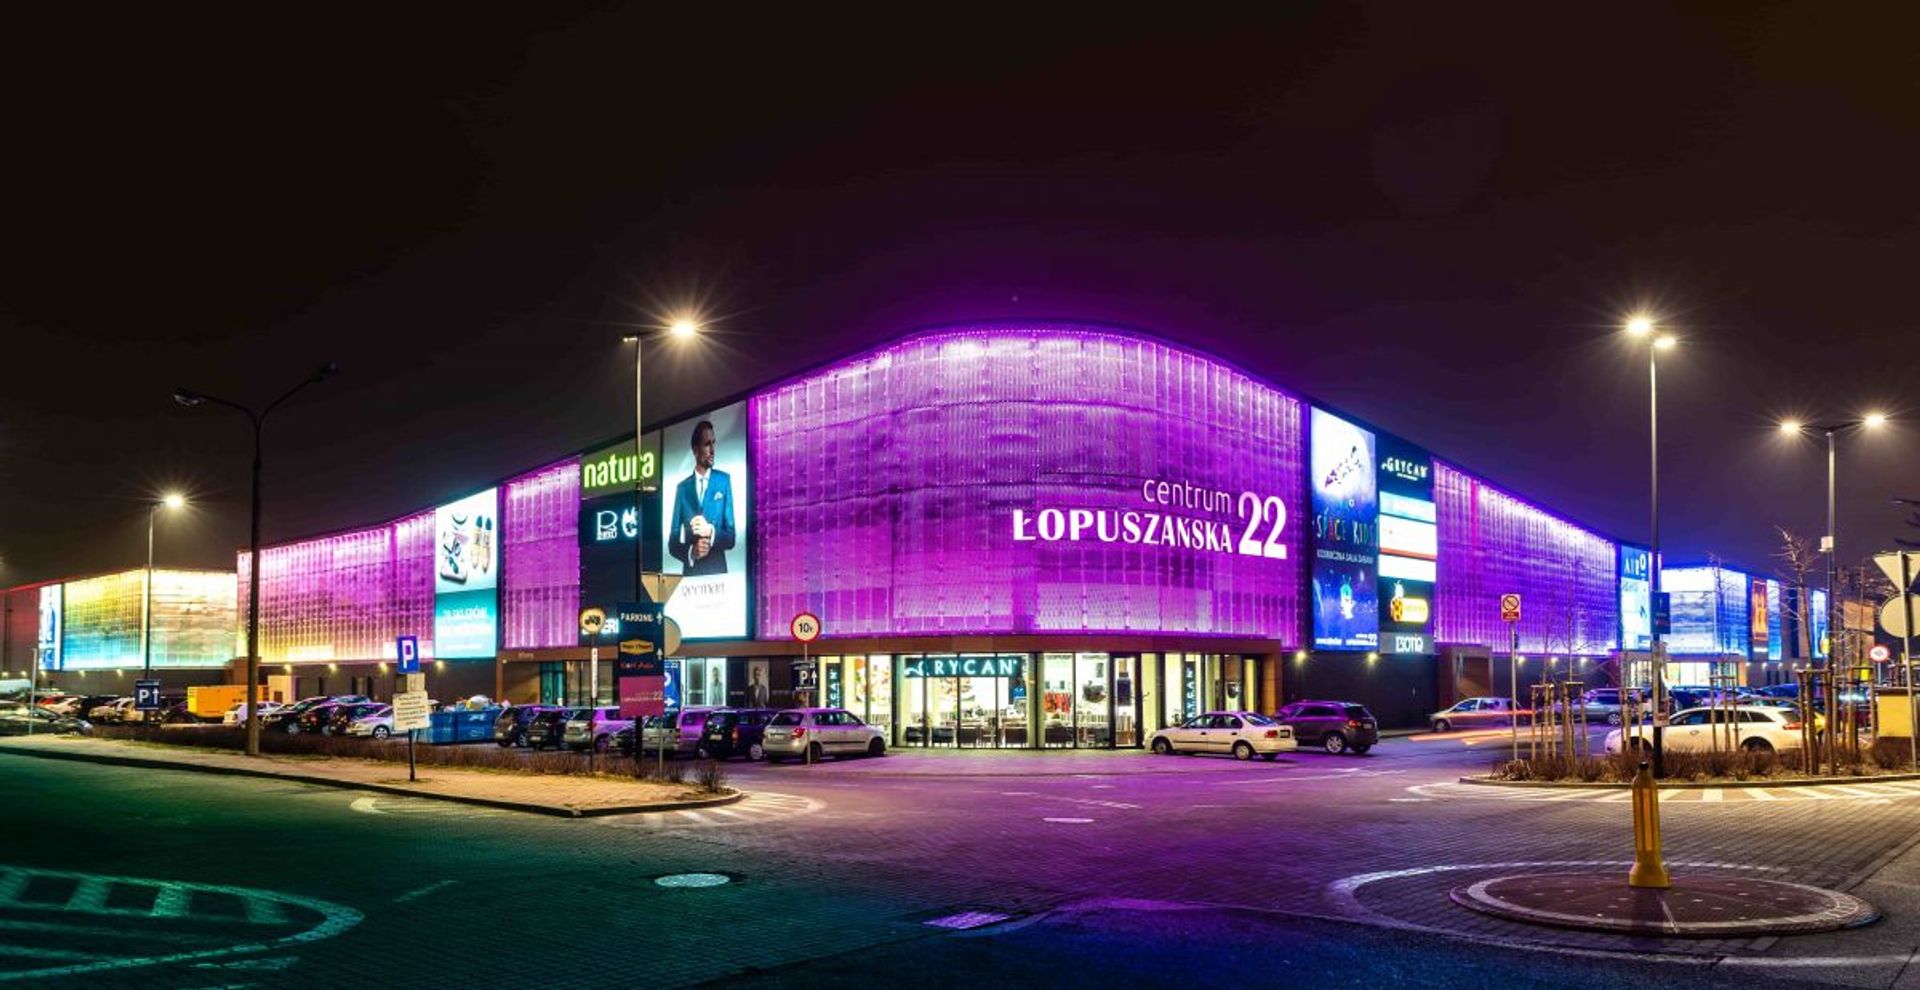 Warszawskie Centrum Łopuszańska 22 z nowymi sklepami